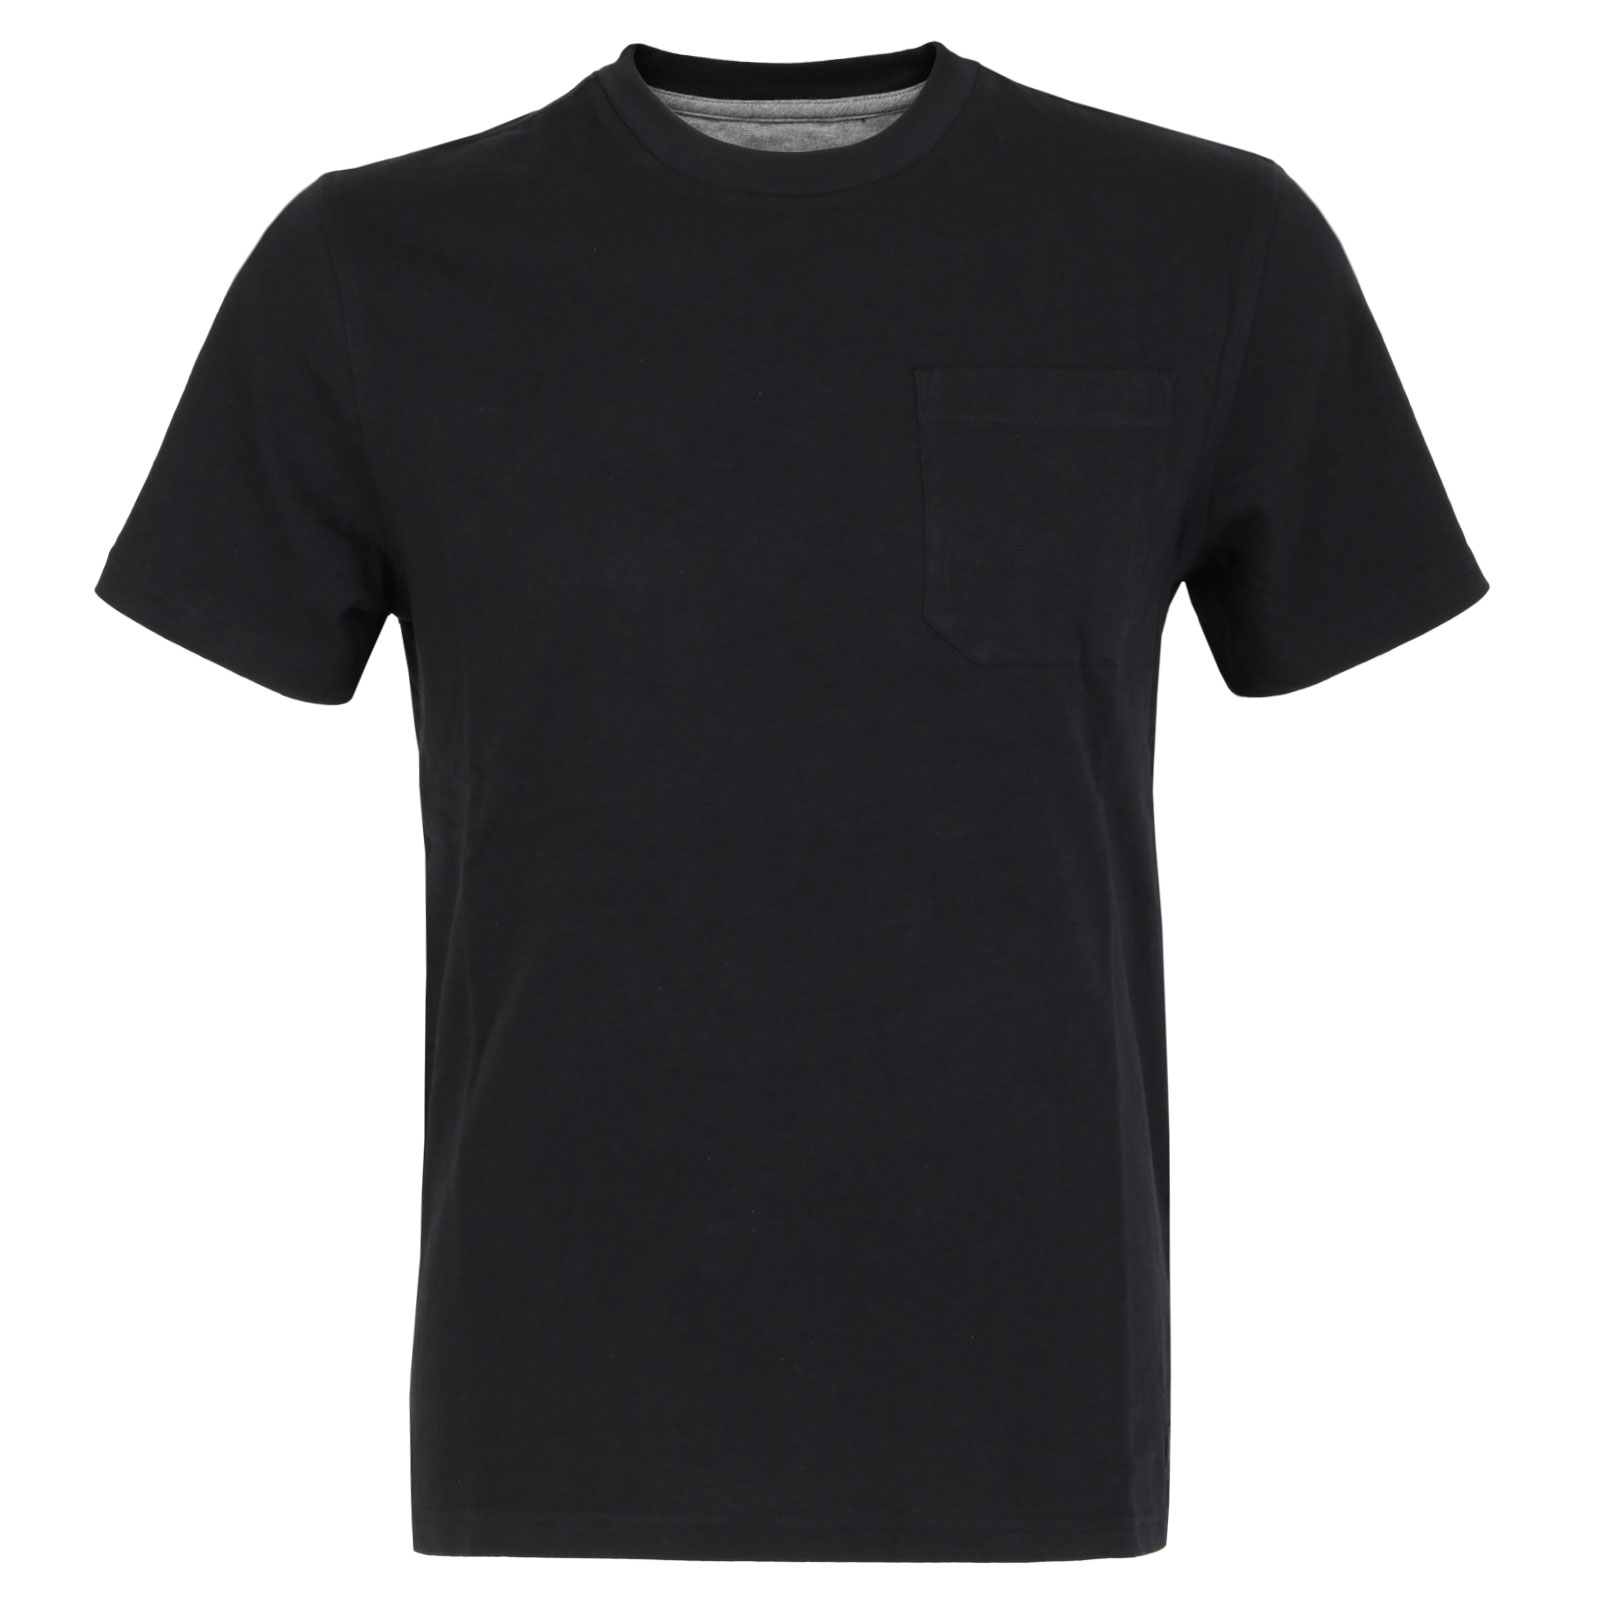 Productfoto van FOX Level Up Pocket T-Shirt Heren - zwart